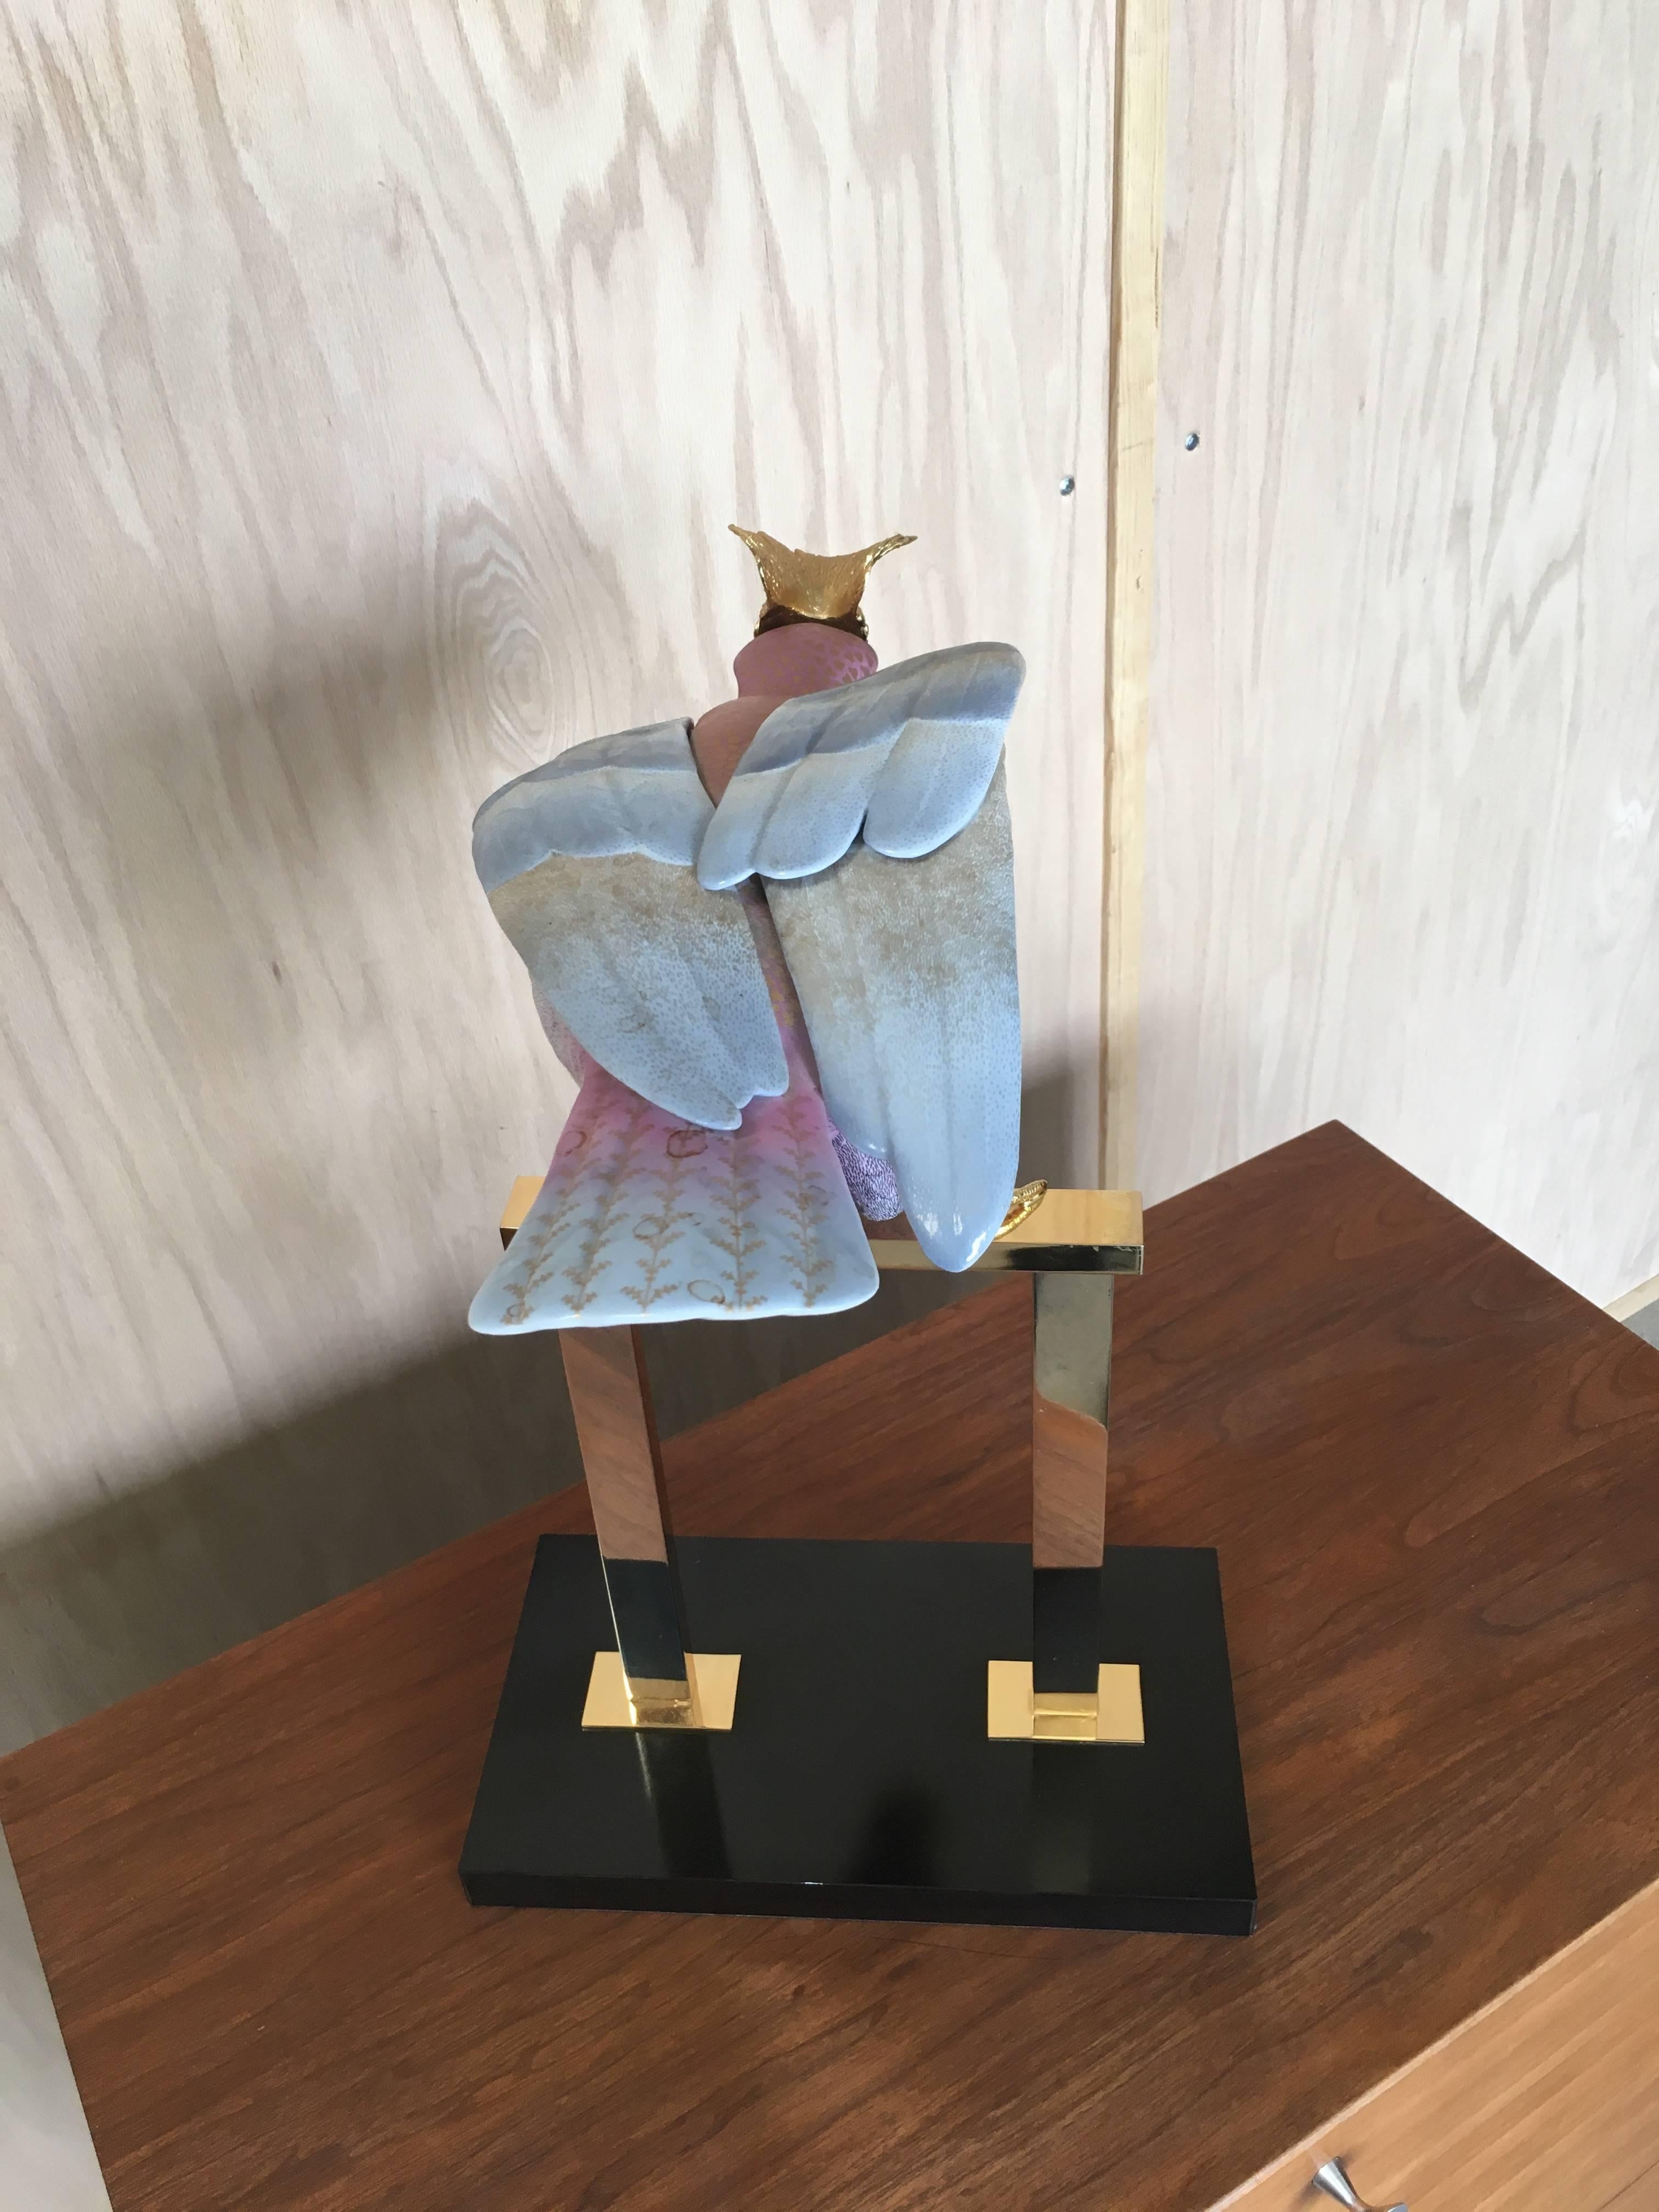 Laiton Mangani for Oggetti Sculpture de cacatoès stylisé peint à la main